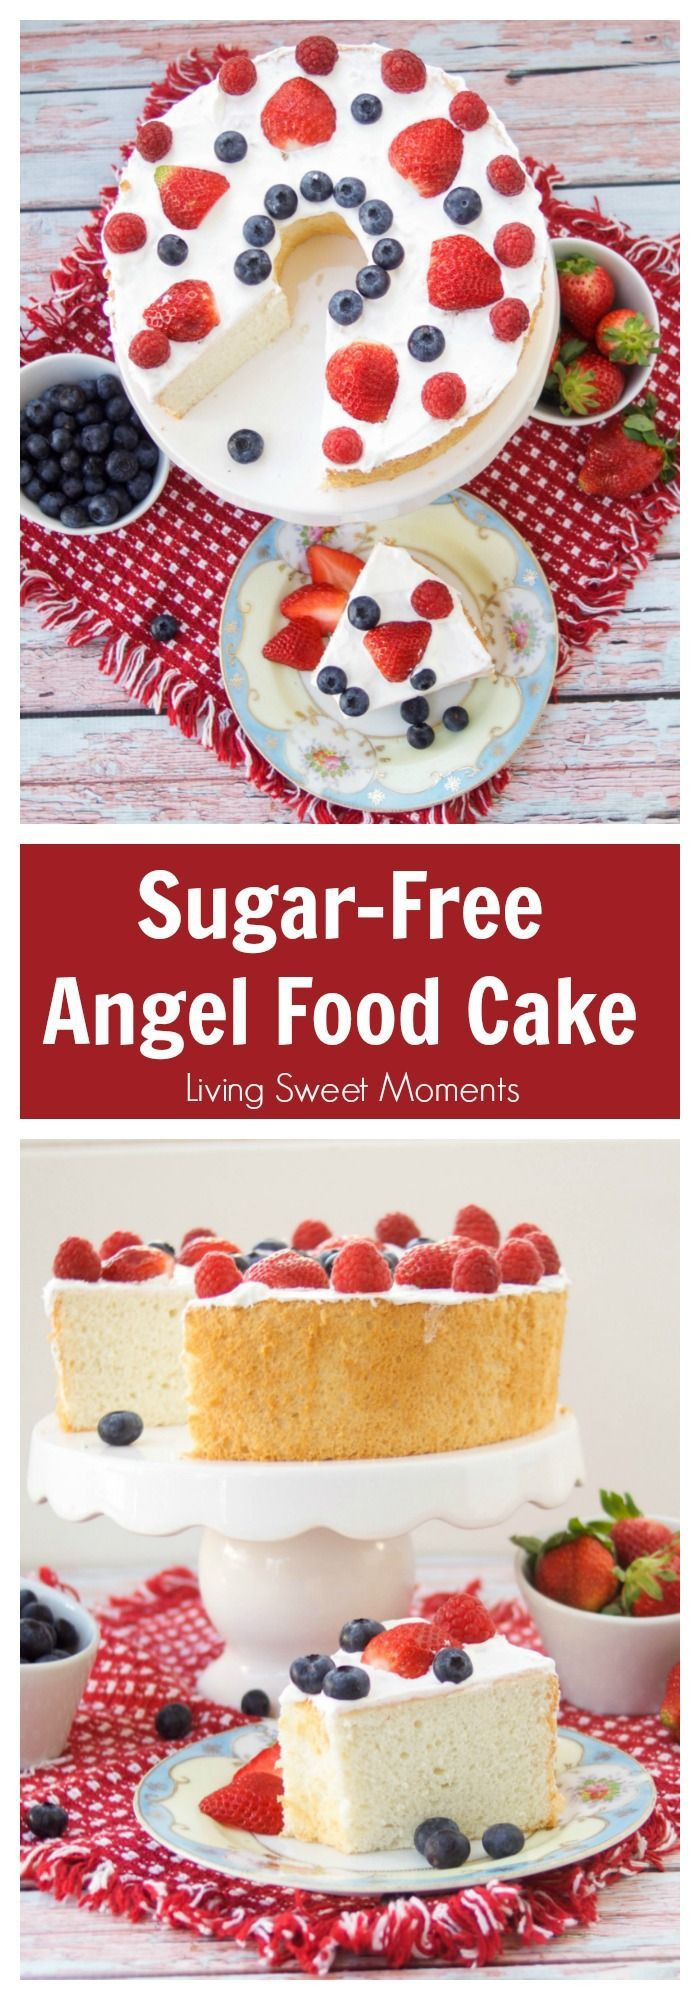 Low Carb Desserts For Diabetics
 Best 25 Easy diabetic desserts ideas on Pinterest